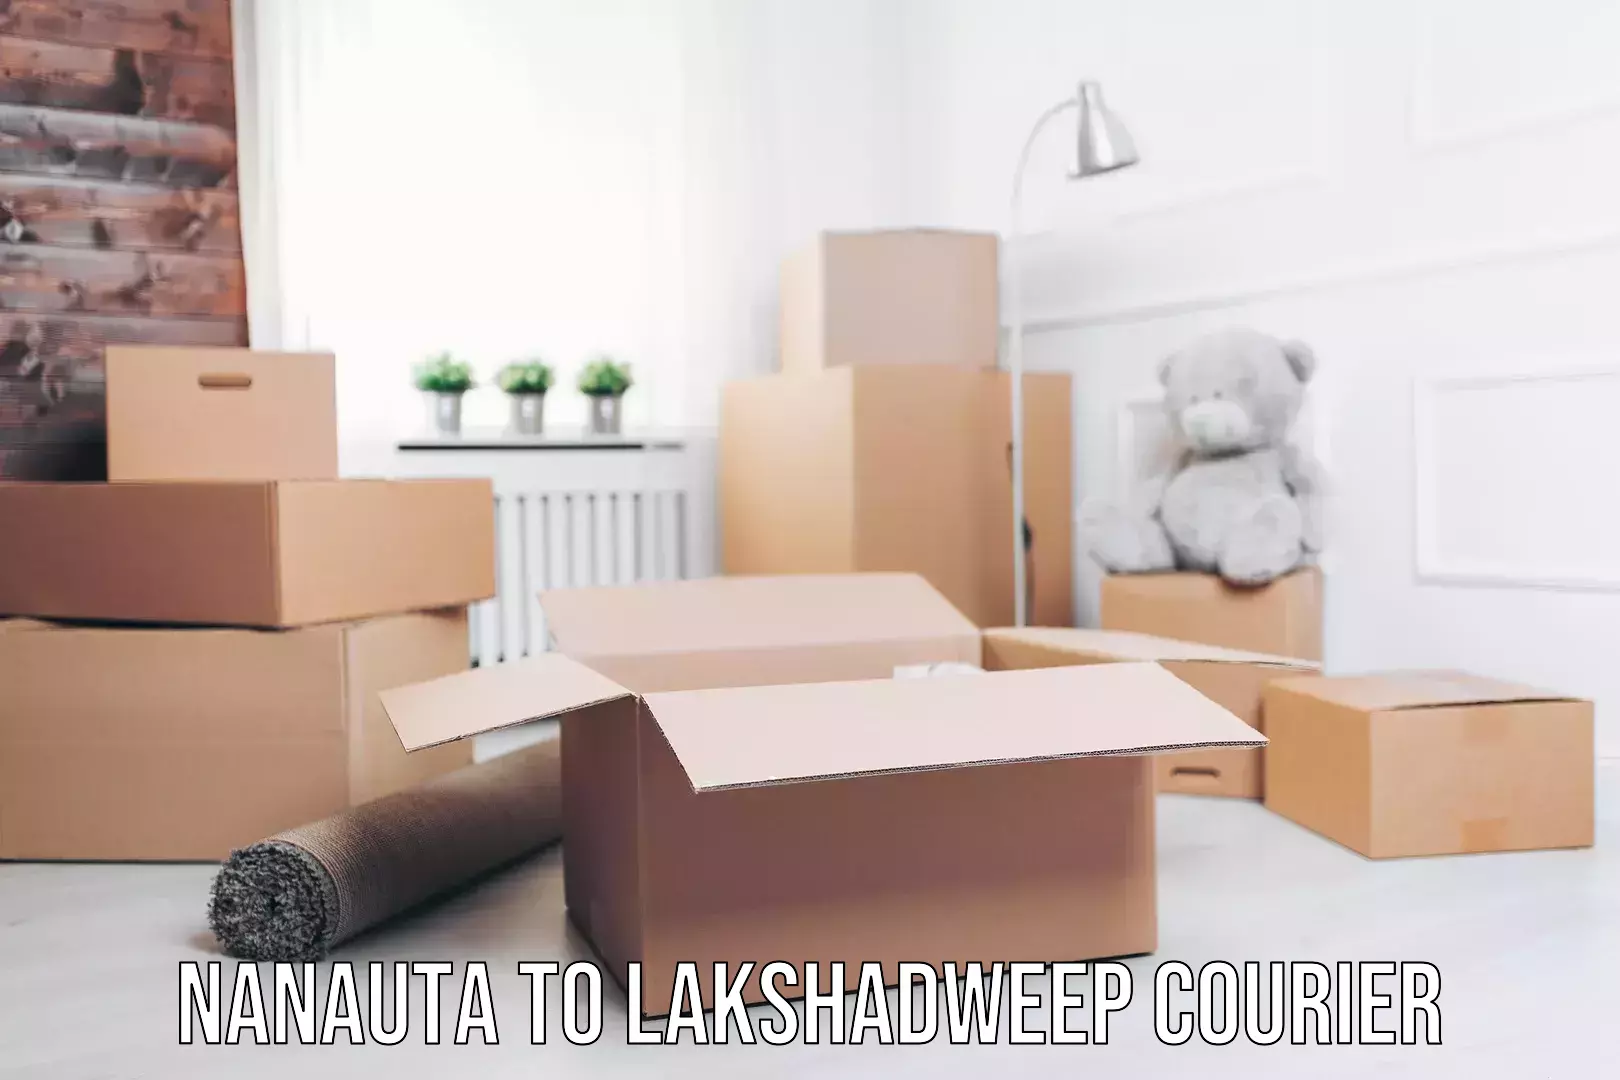 Efficient moving company Nanauta to Lakshadweep